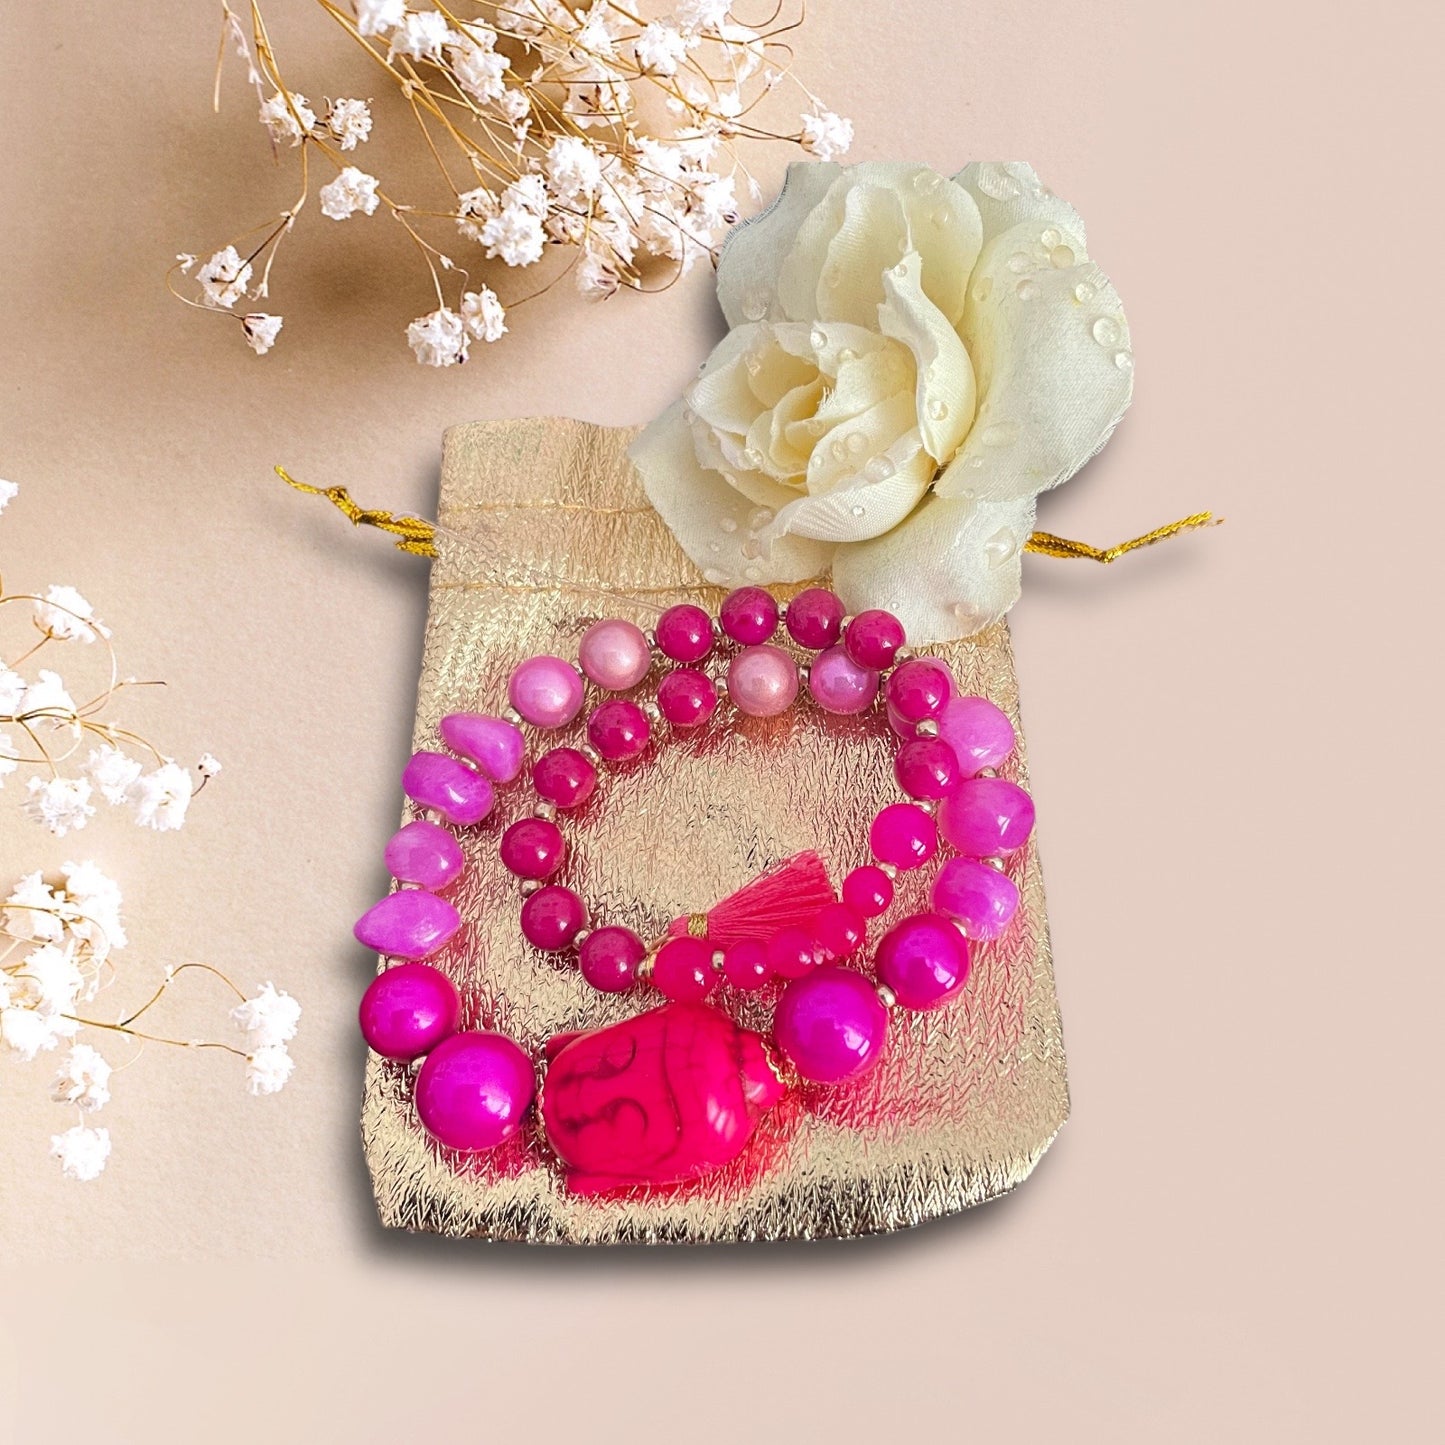 Armband ARIANA aus Perlen in leuchtendem Pink mit einer Perle Buddha Kopf